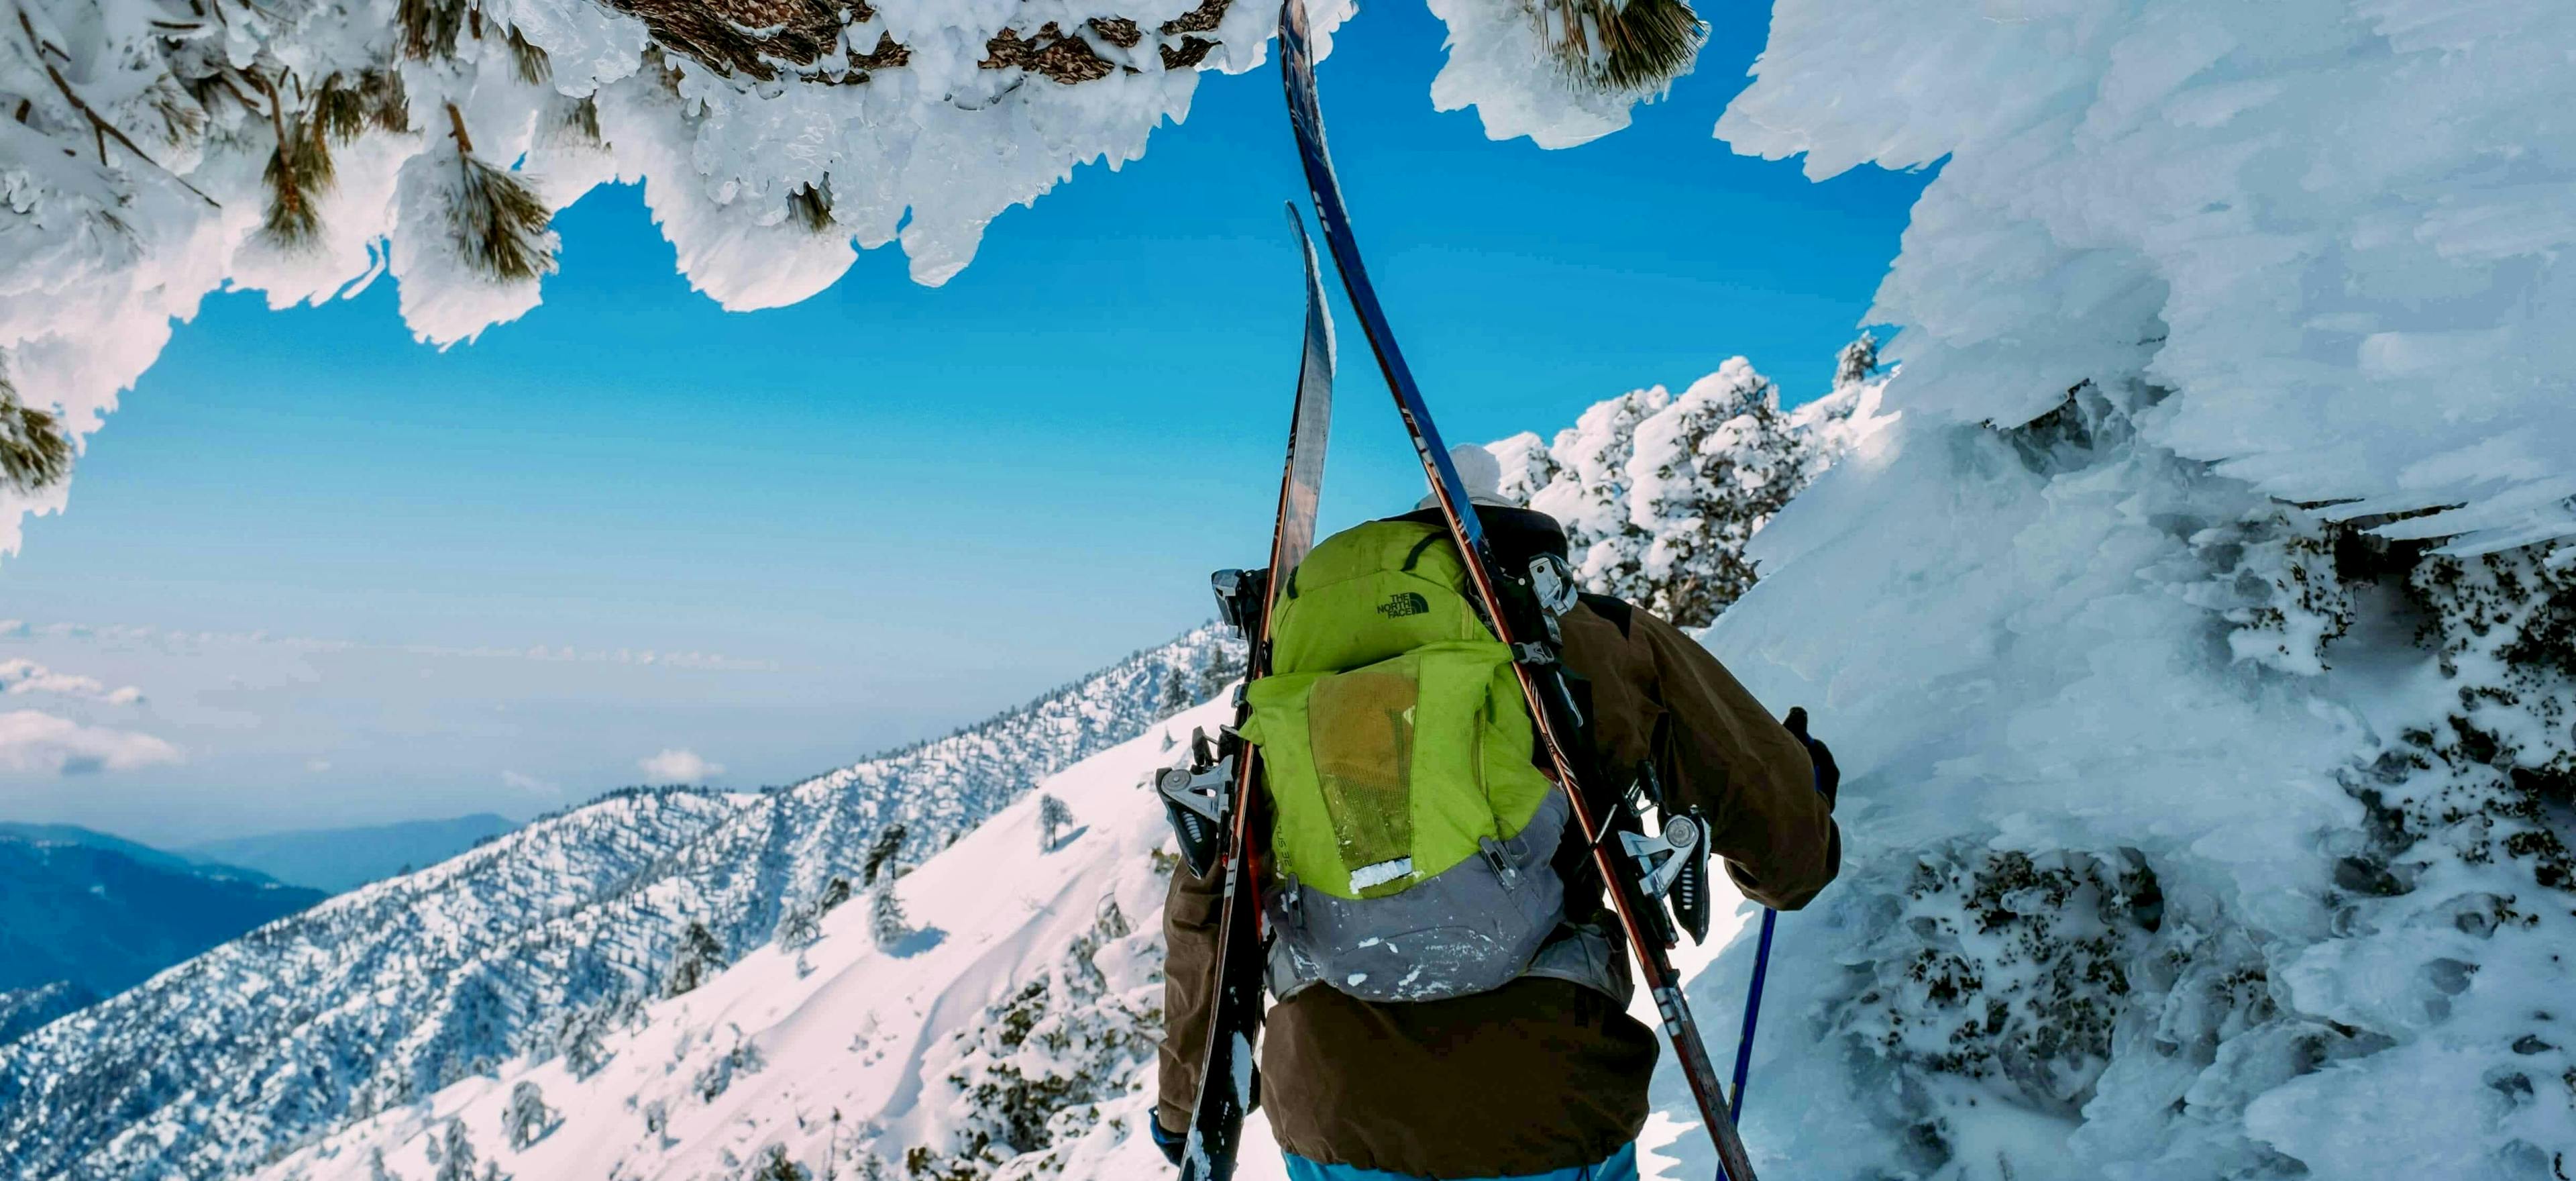 Best peaks for climbing in Nepal